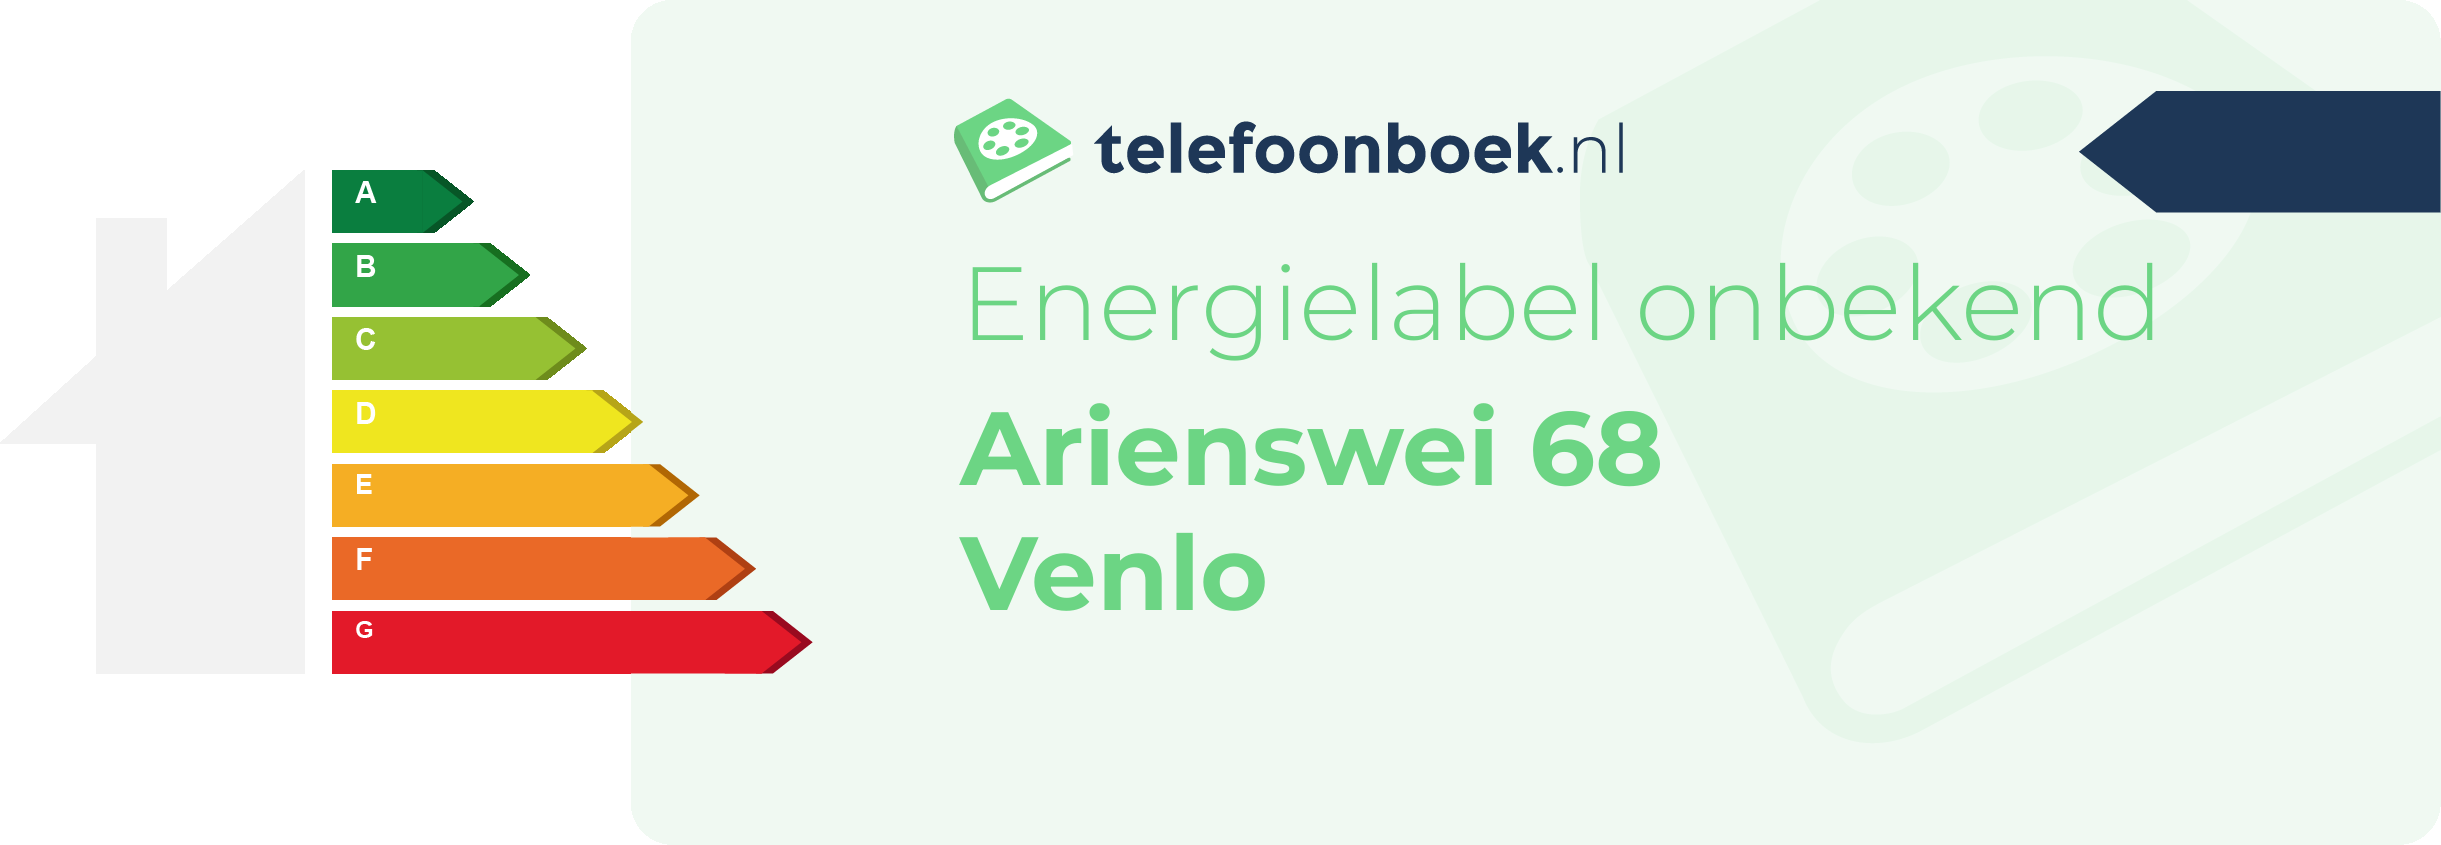 Energielabel Arienswei 68 Venlo